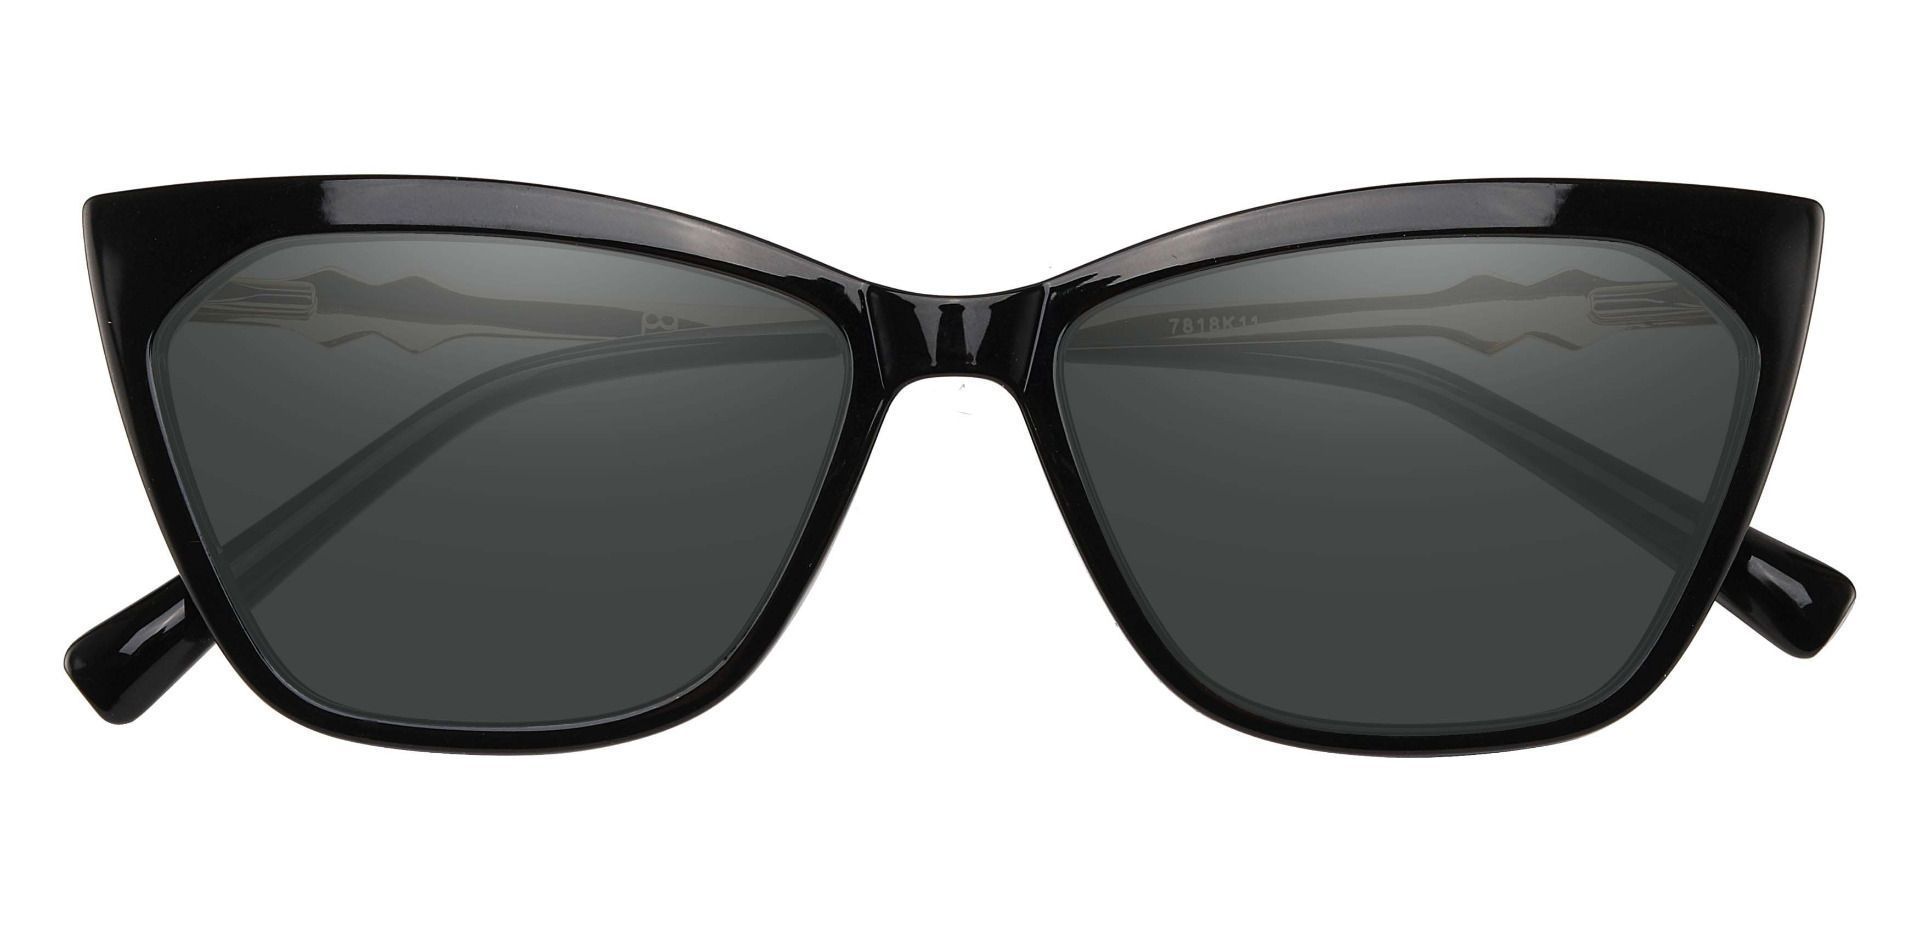 Addison Cat Eye Prescription Sunglasses - Black Frame With Gray Lenses